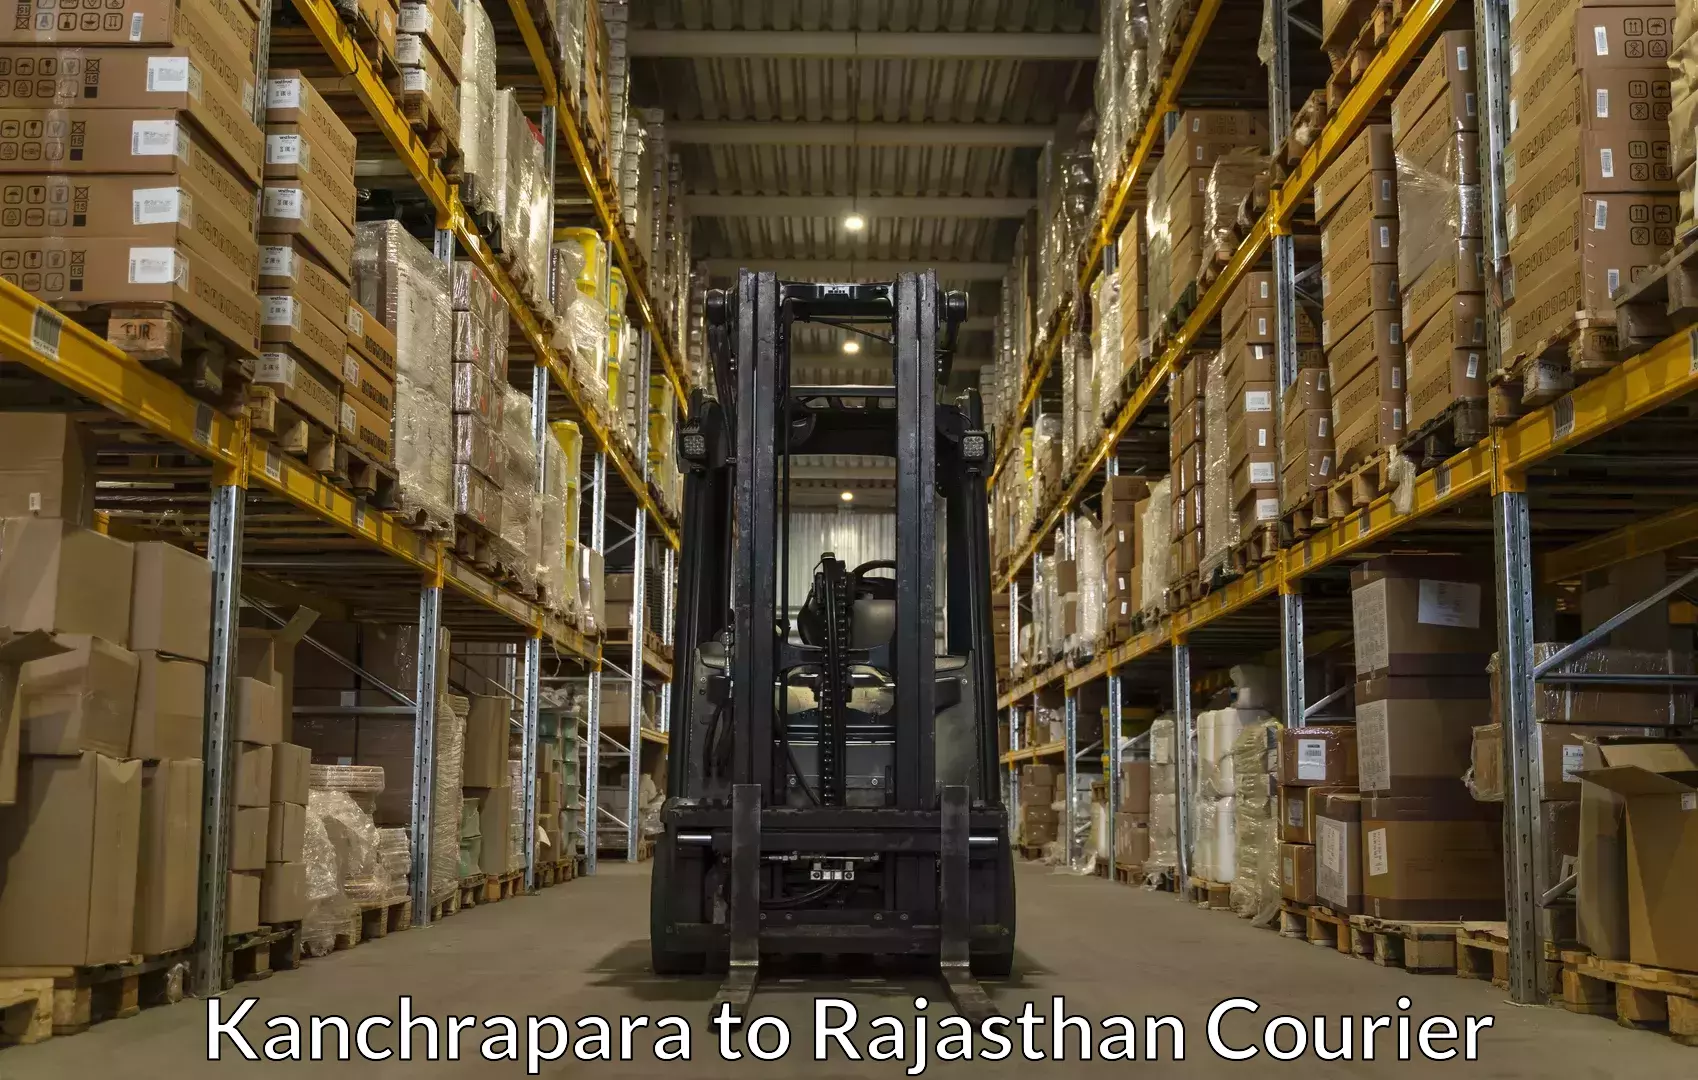 Baggage shipping service Kanchrapara to Kotputli